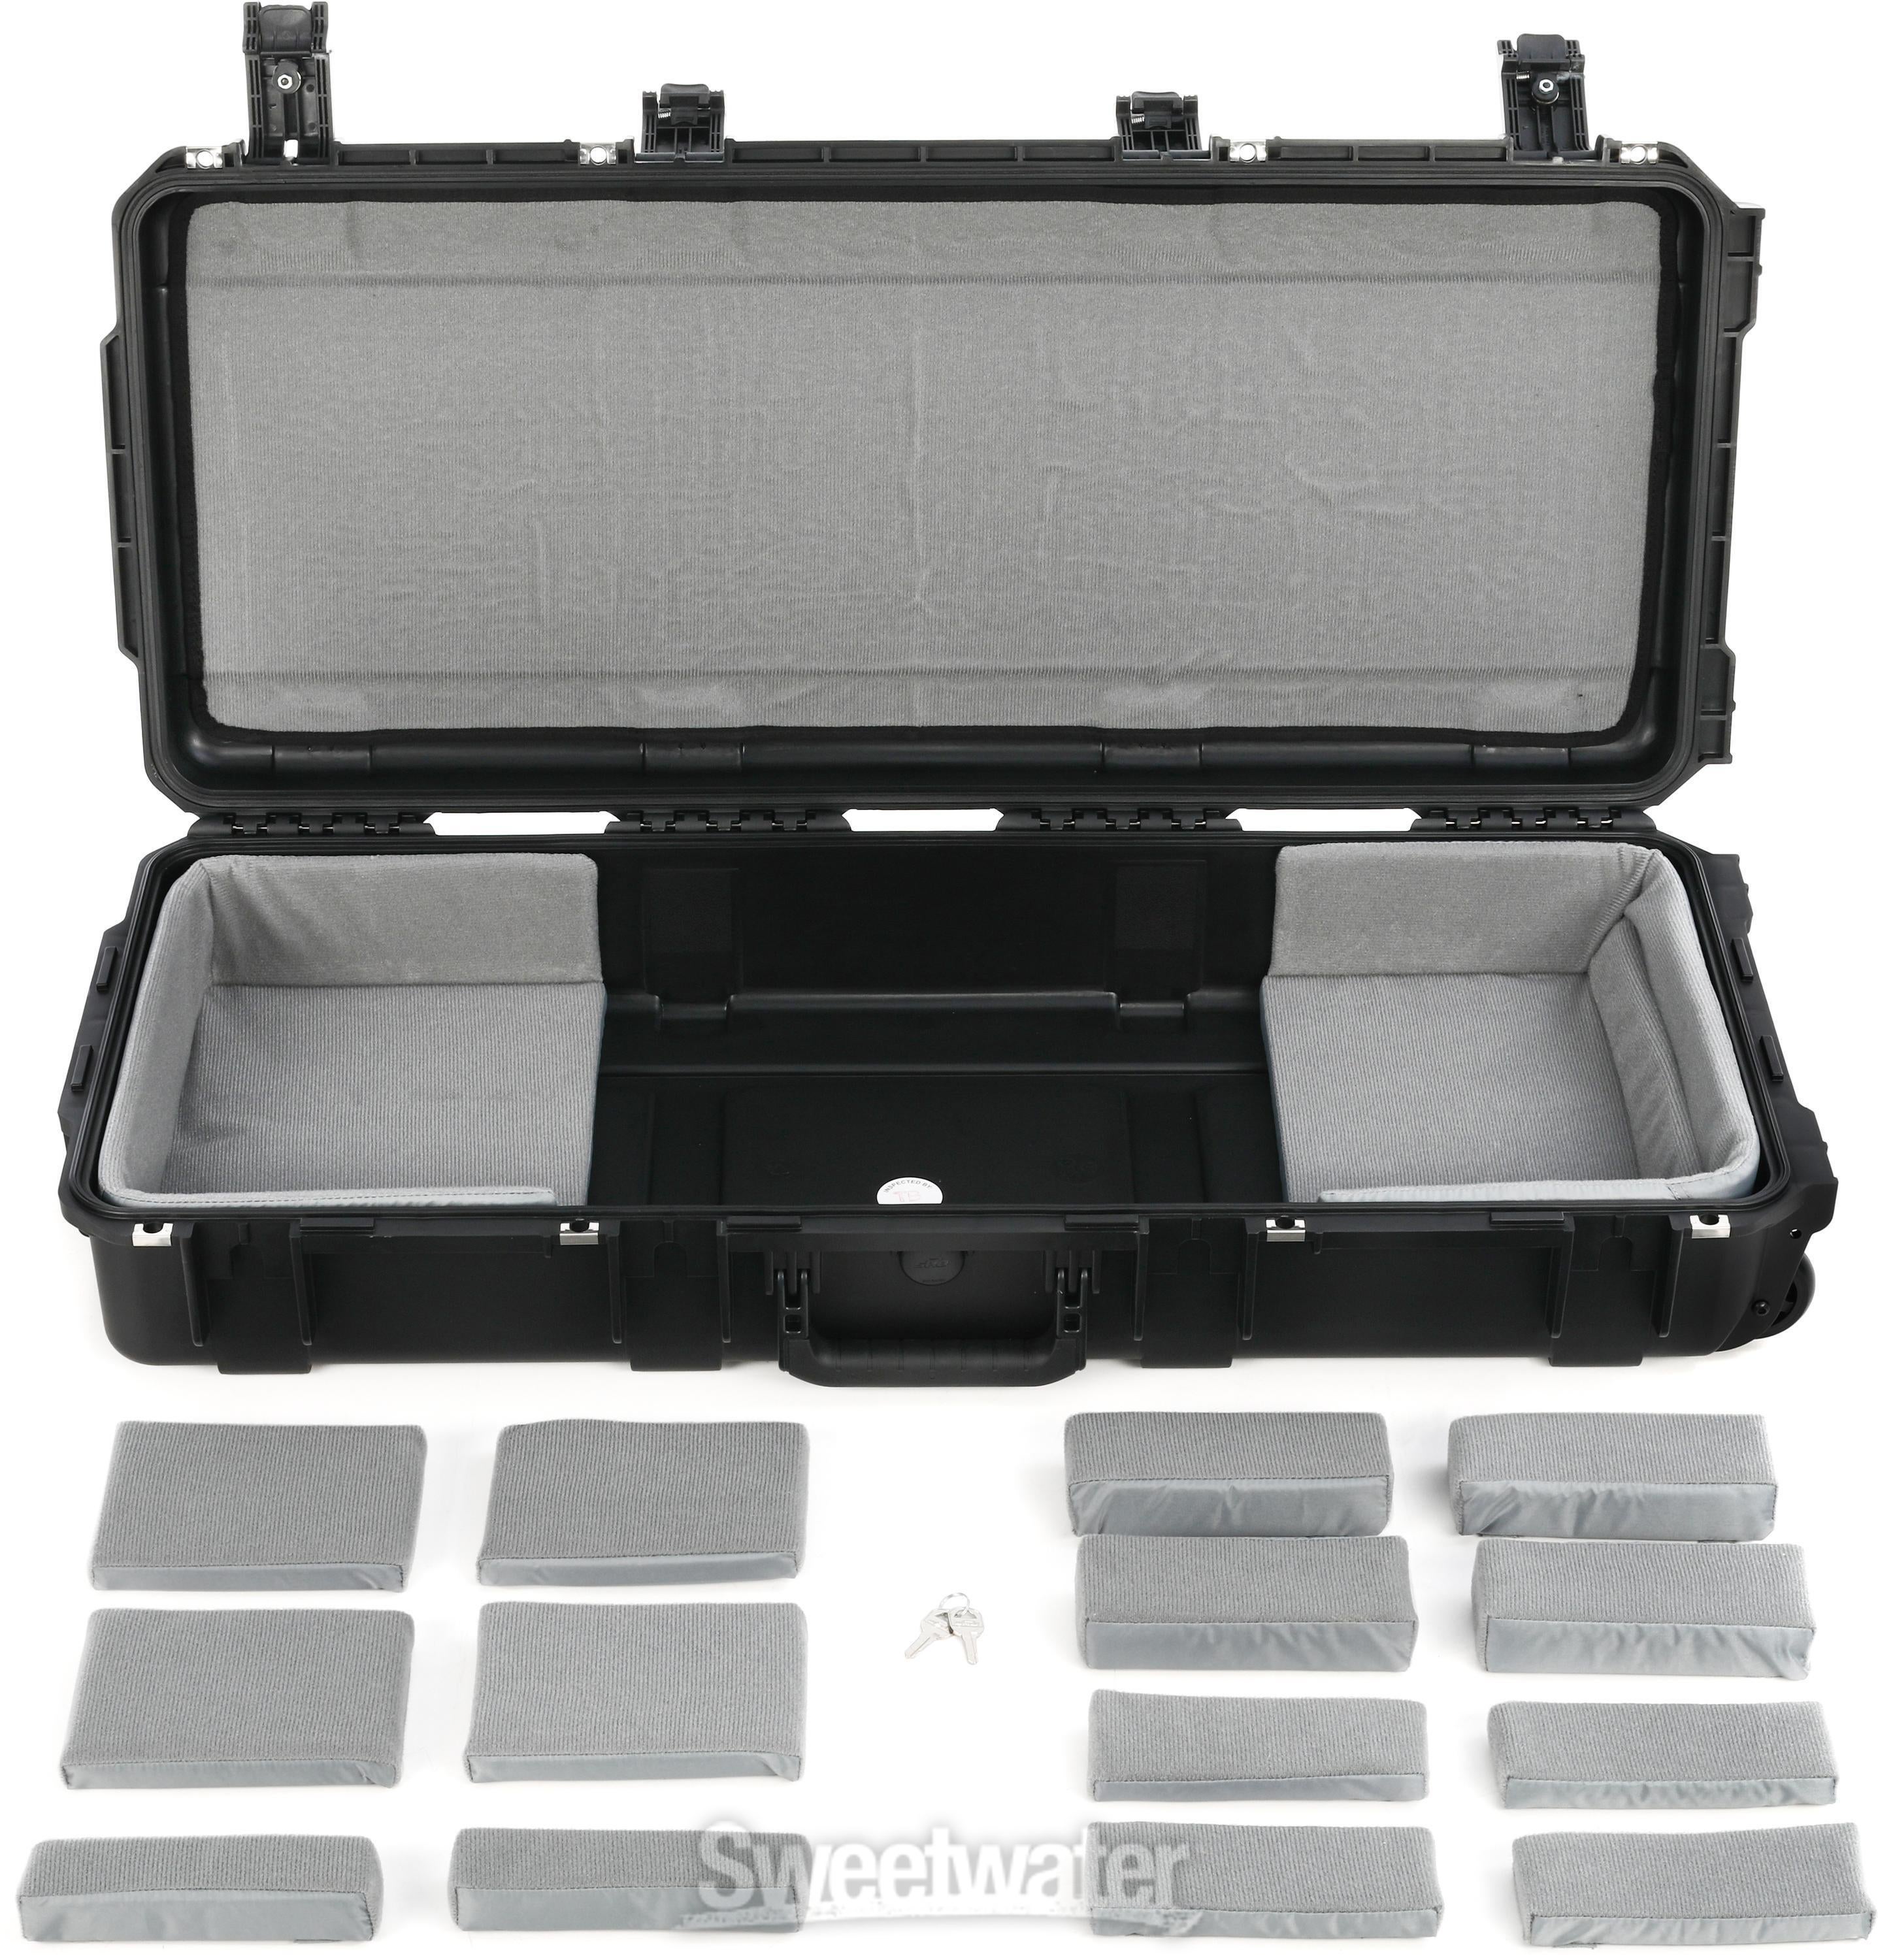 SKB 3i-3614-TKBD iSeries Rolling Waterproof 49-key Keyboard Case |  Sweetwater